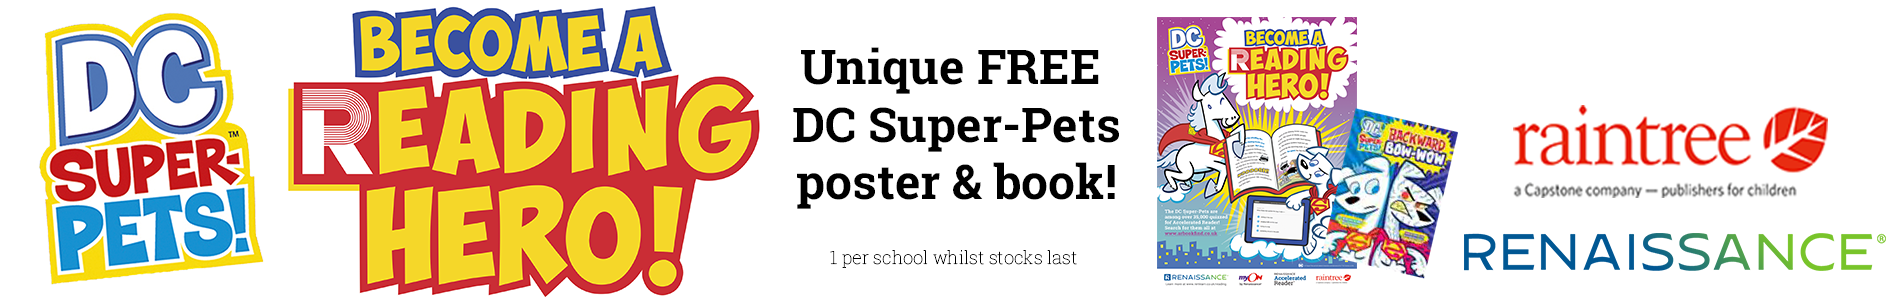 DC Super-Pets giveaway